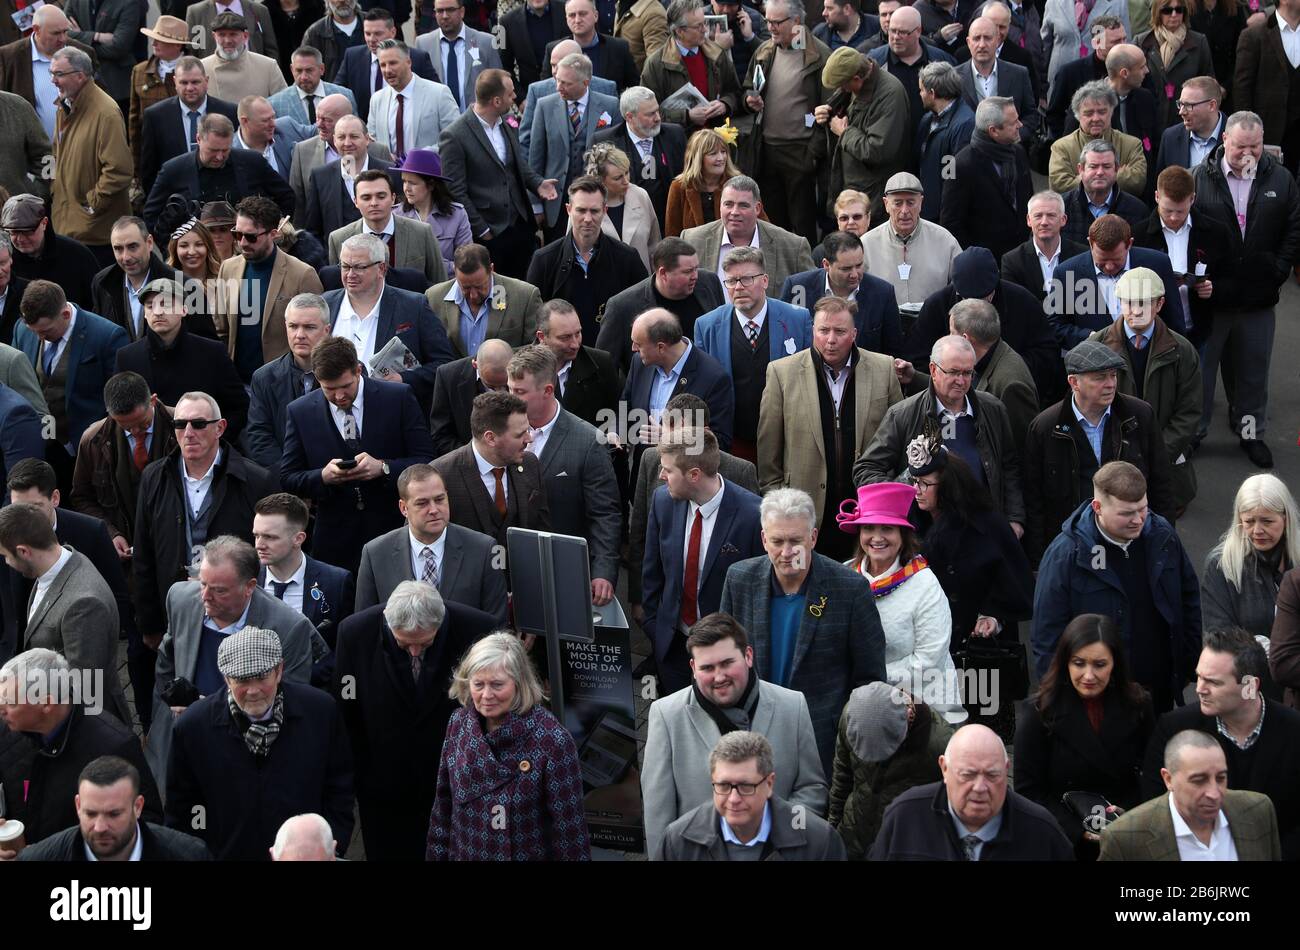 Am zweiten Tag des Cheltenham Festivals auf der Pferderennbahn Cheltenham warten Menschenmassen vor dem Haupteingang. Stockfoto